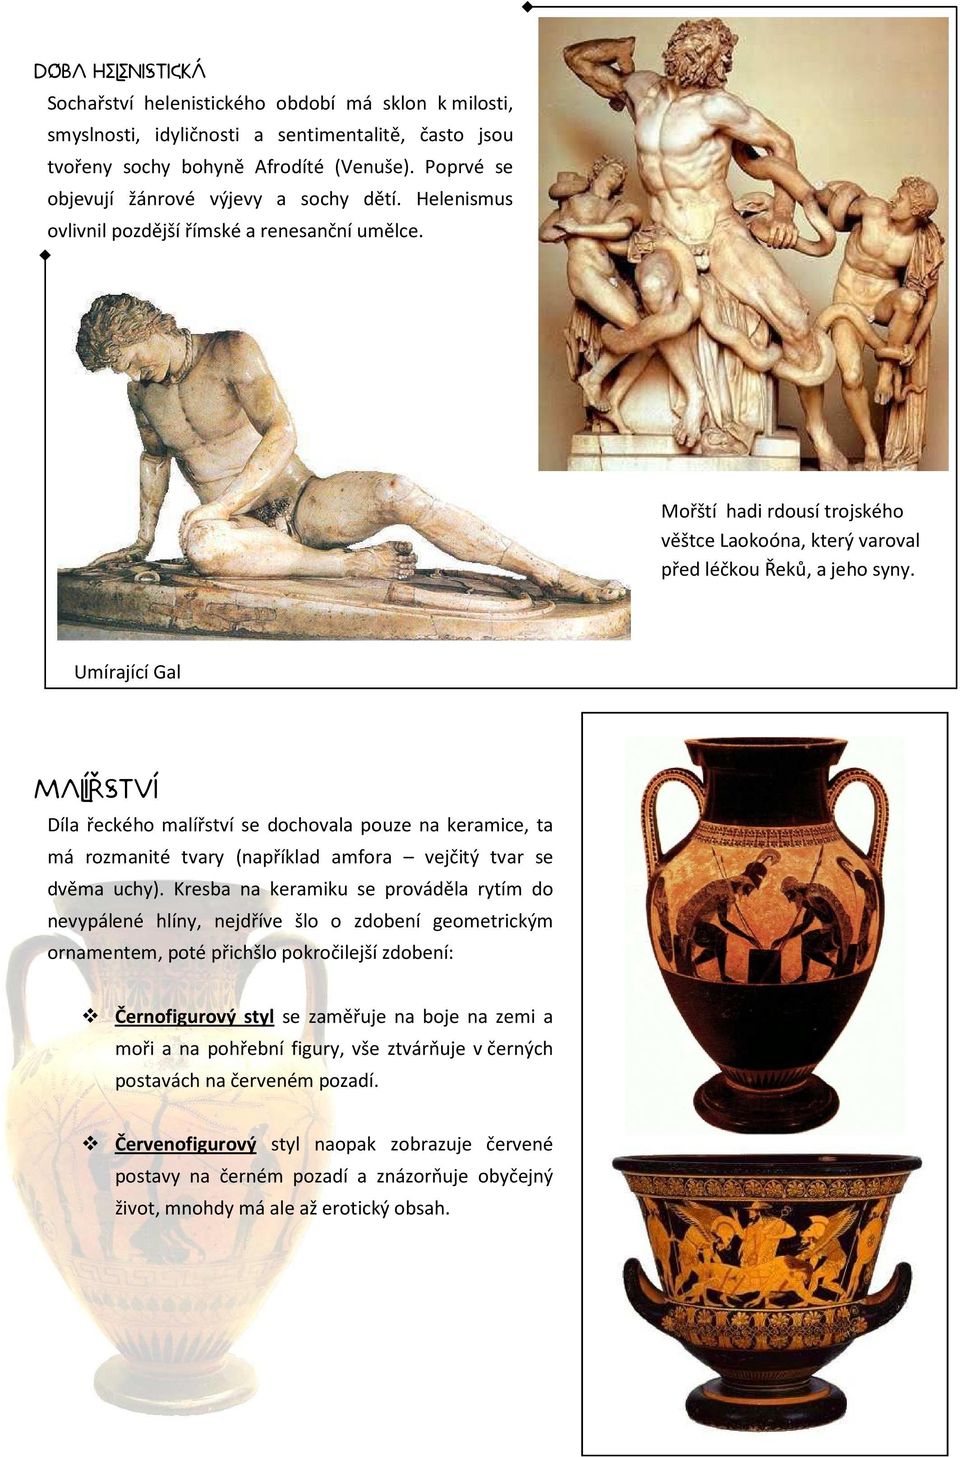 Umírající Gal Malířství Díla řeckého malířství se dochovala pouze na keramice, ta má rozmanité tvary (například amfora vejčitý tvar se dvěma uchy).